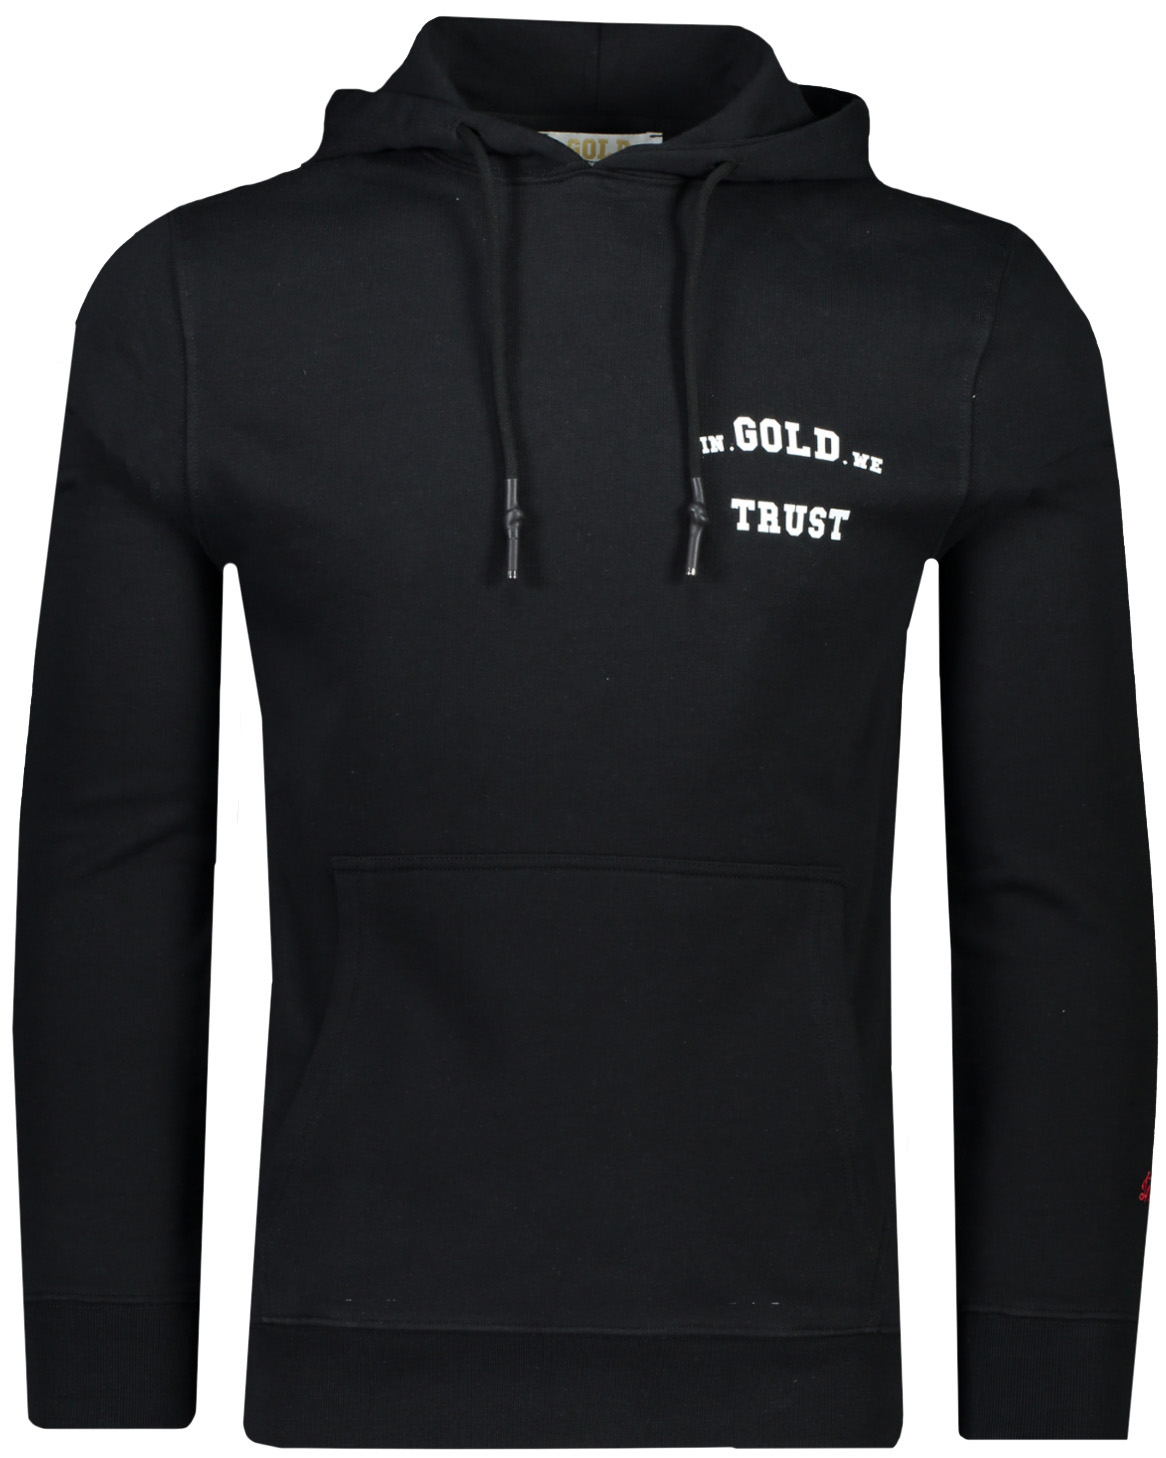 Verstikkend stad Cyberruimte In Gold We Trust Sweater Zwart hoody kopen | Hans voortman